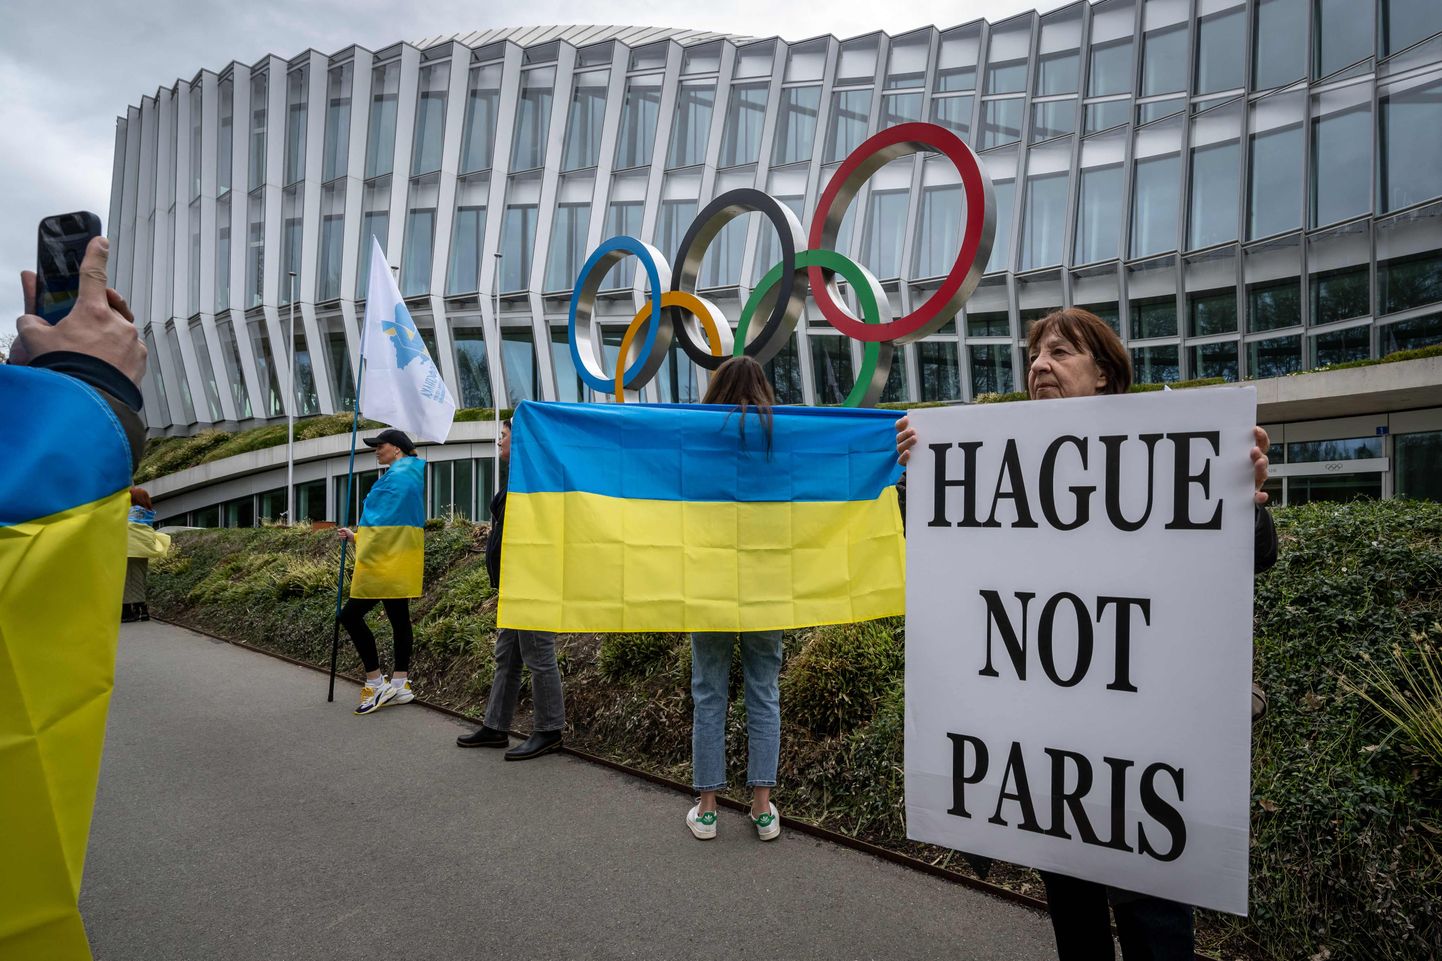 Совсем скоро МОК будет решать, допускать россиян на Олимпийские игры в Париже или нет. Общественность выступает резко против допуска.